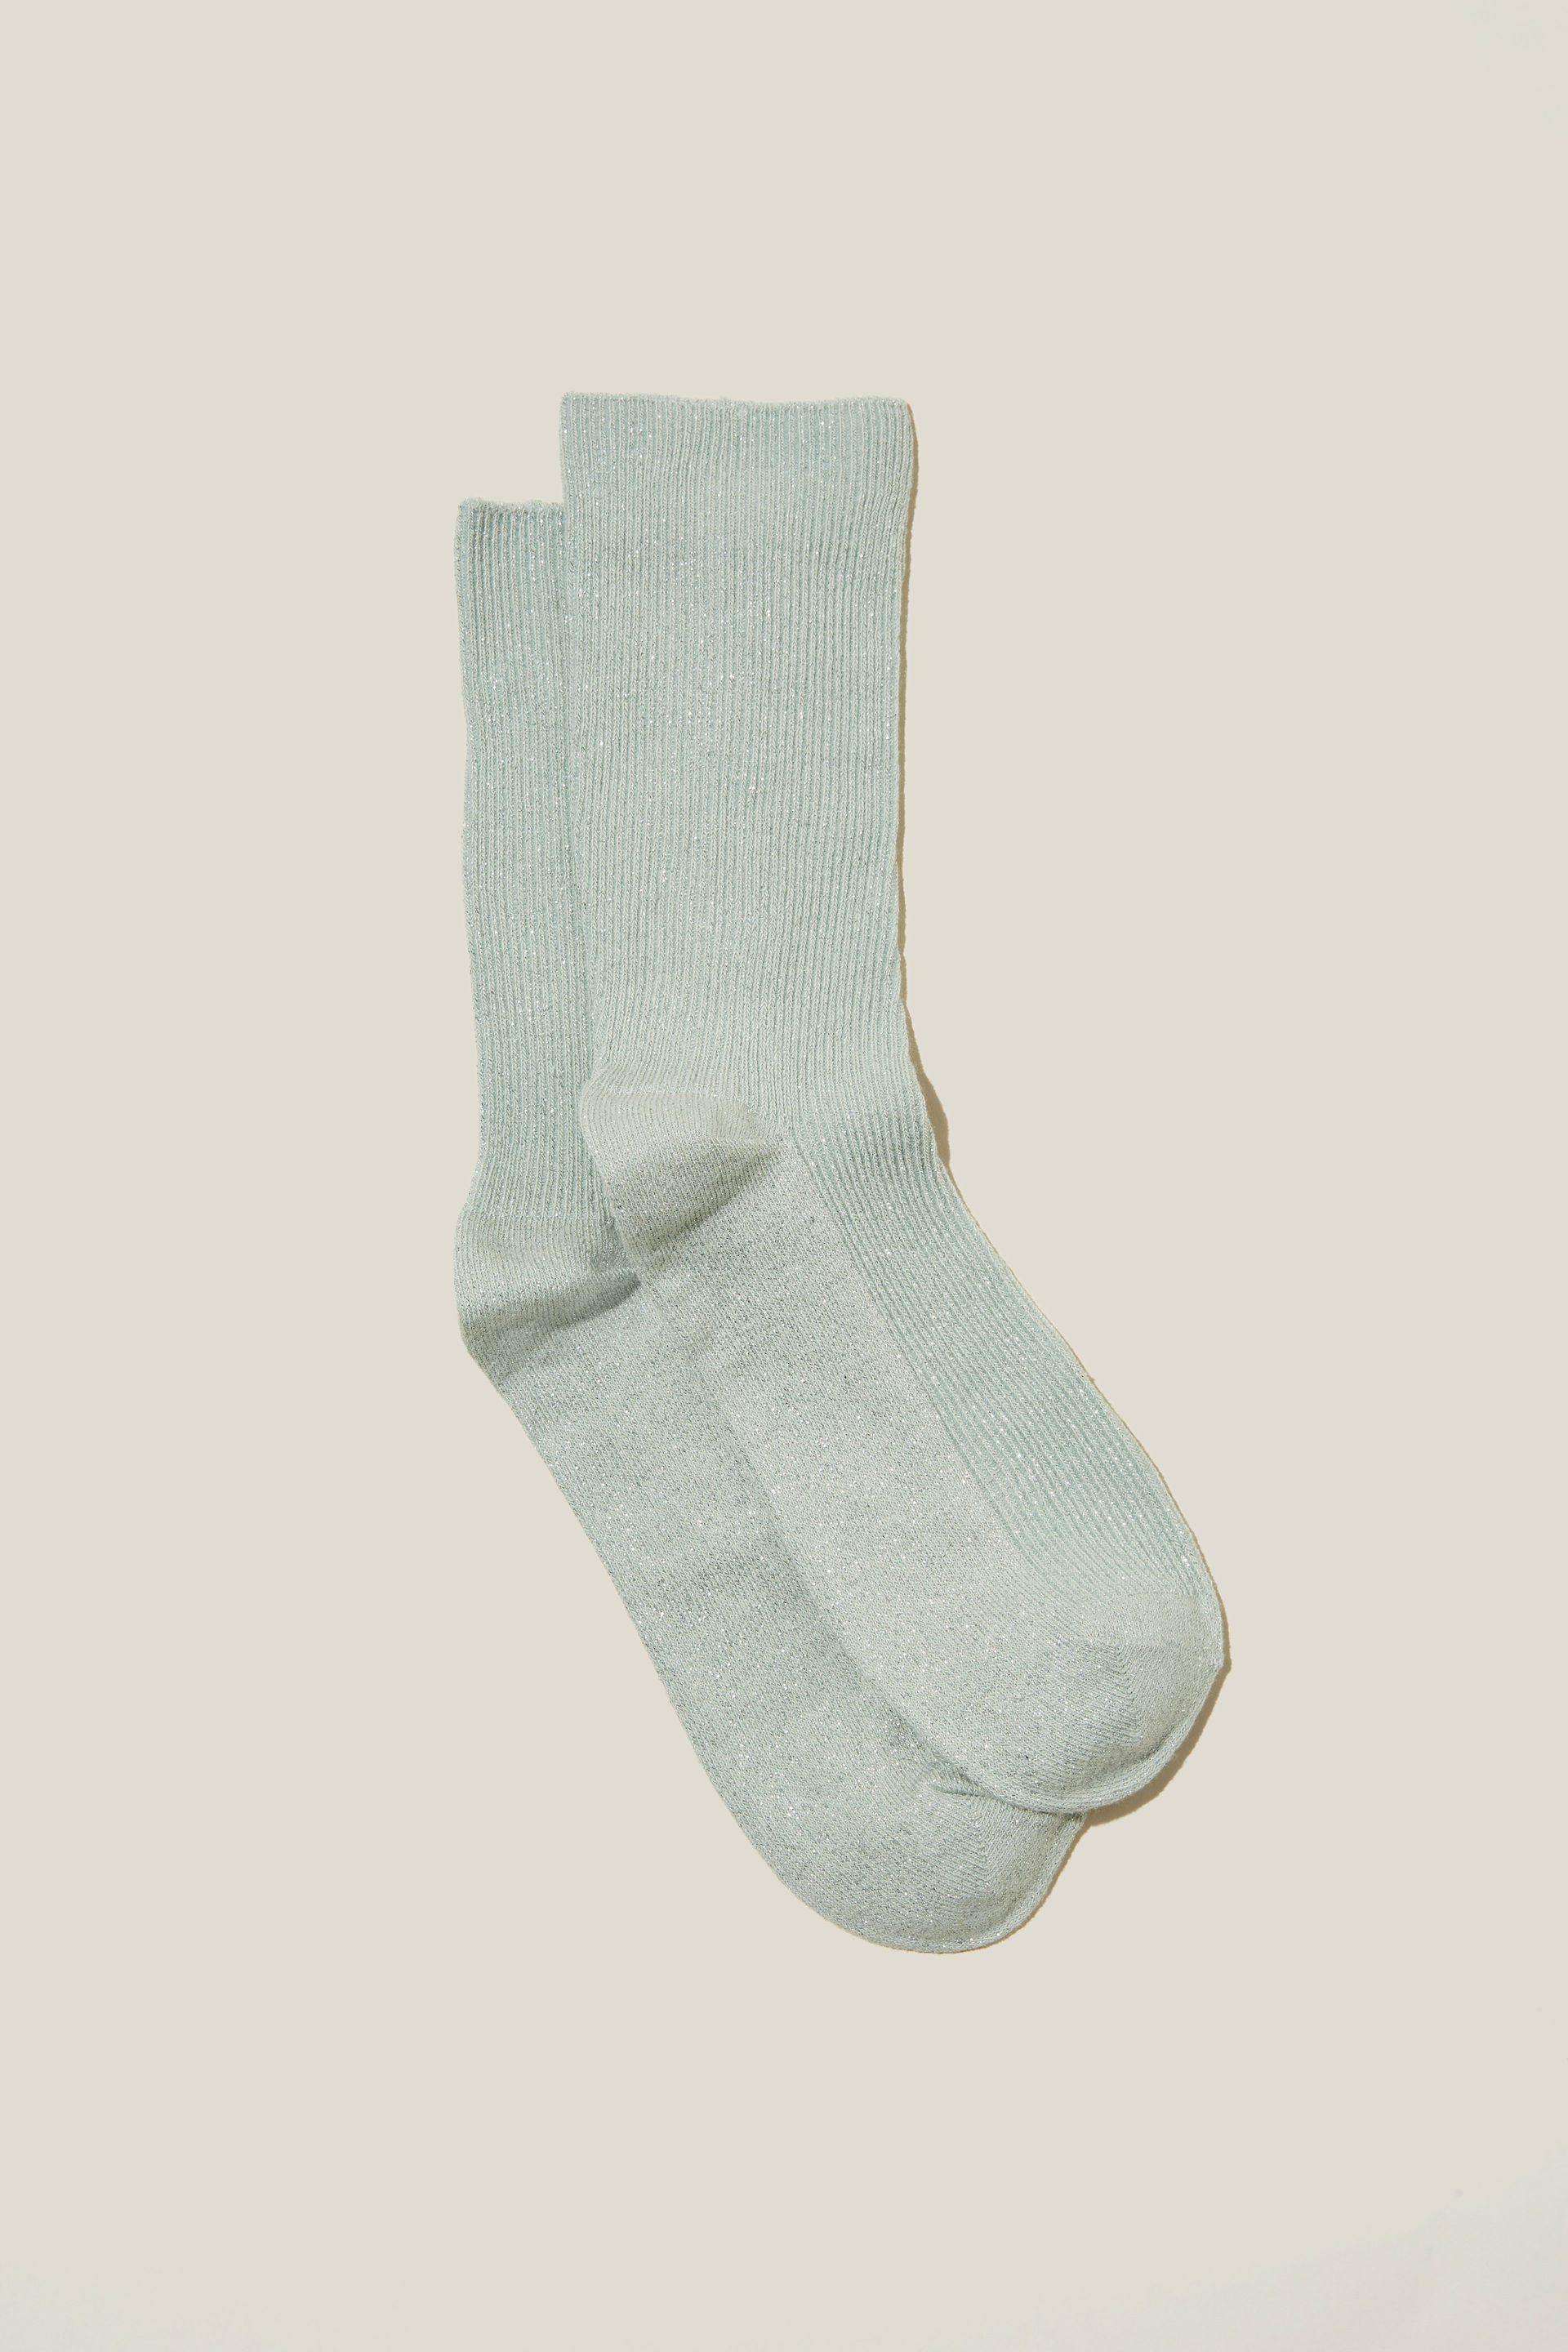 Rubi - Lurex Fine Ribbed Sock - Seafoam